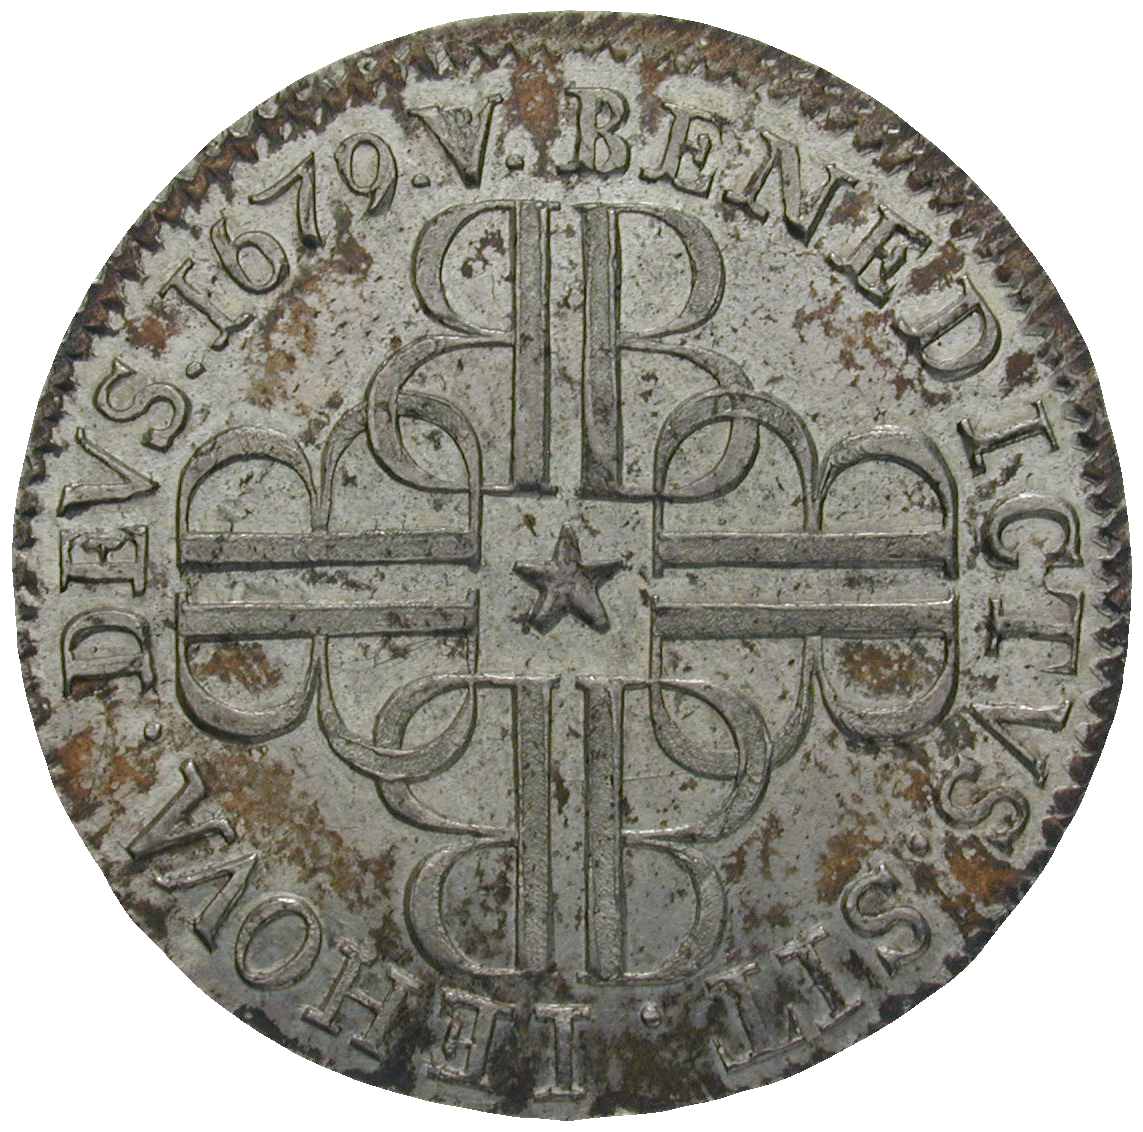 Republik Bern, Taler 1679 (reverse)